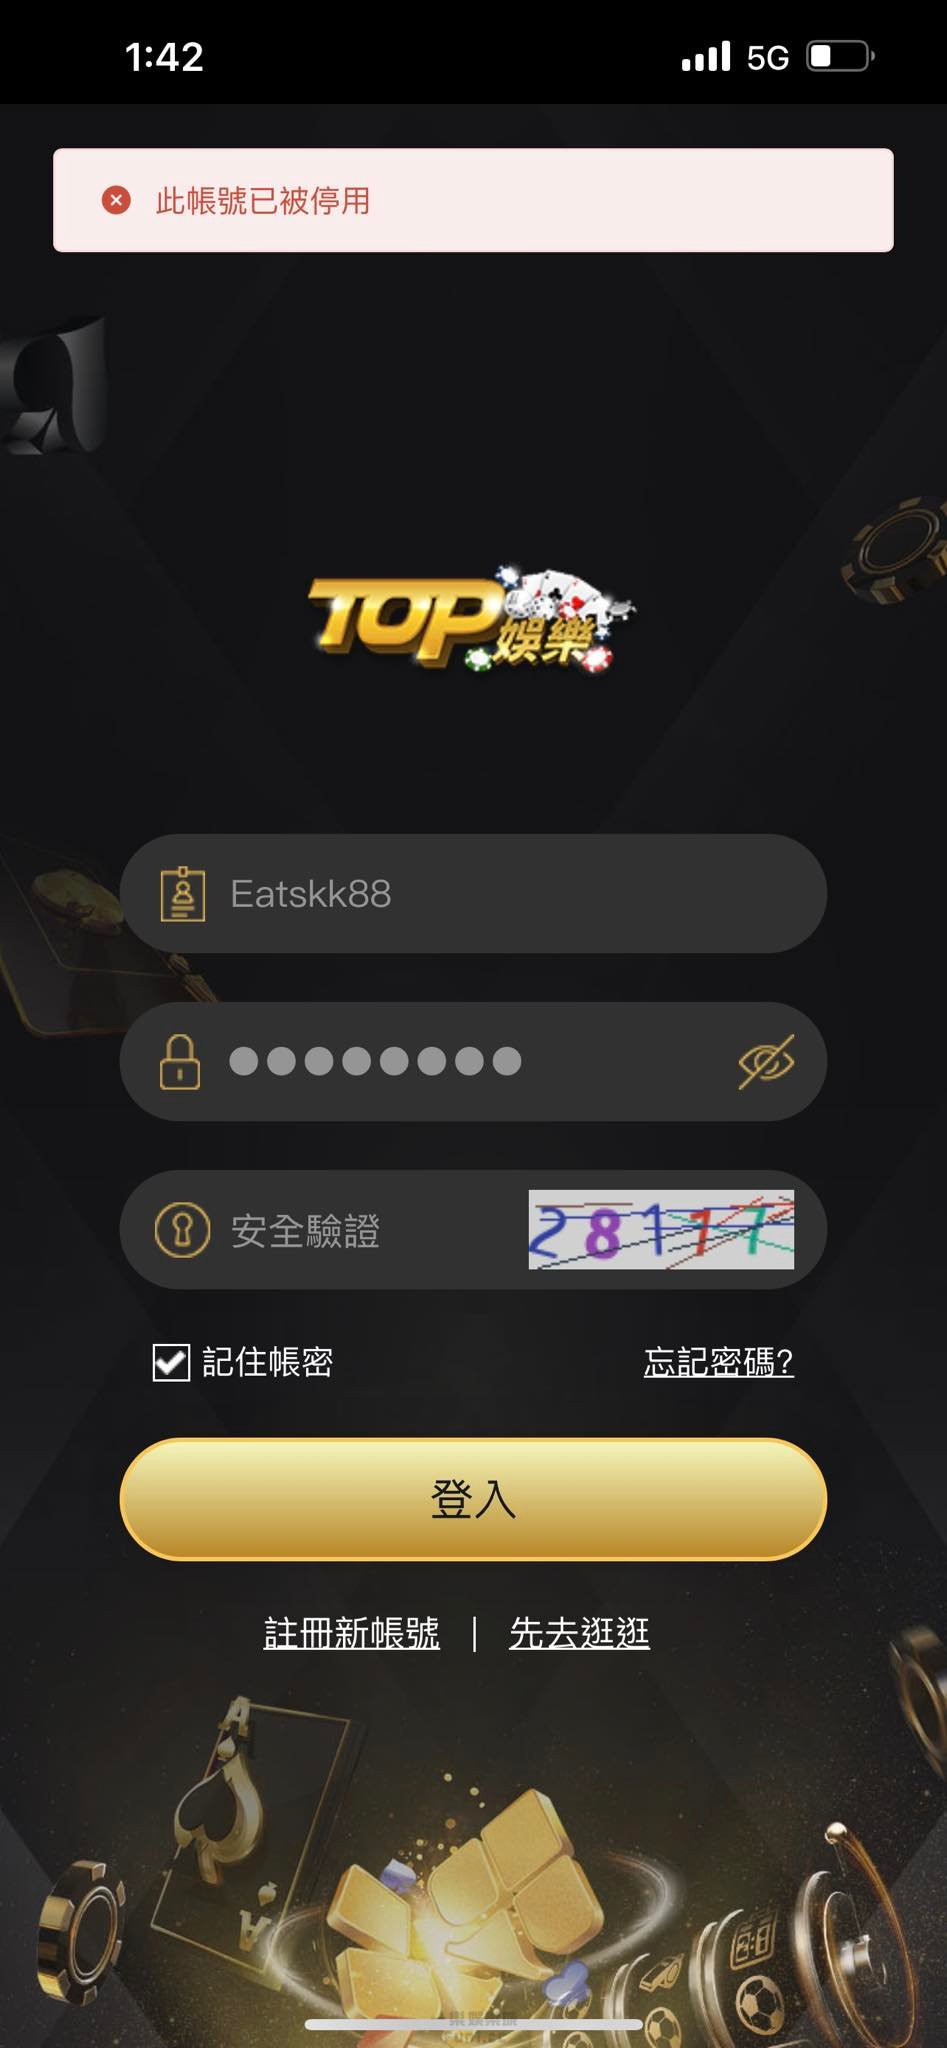 TOP娛樂城-帳號被封鎖.jpg